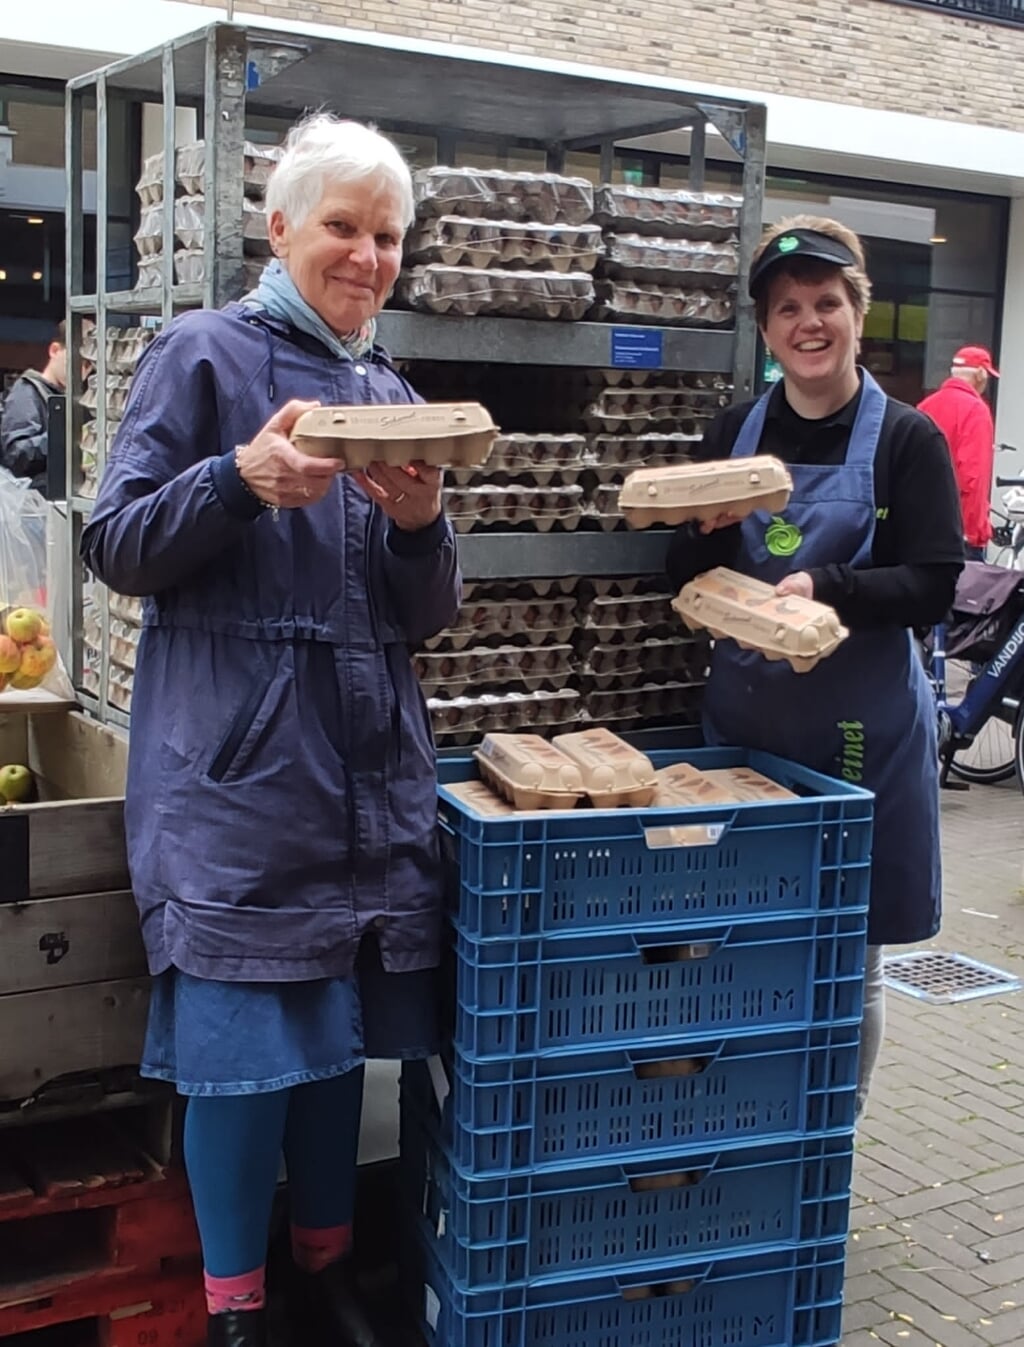 Jenny Alberts heeft eierer4en gedoneerd aan de Voedselbank, rechts Pauliene Boerefijn van De Goudreinet.